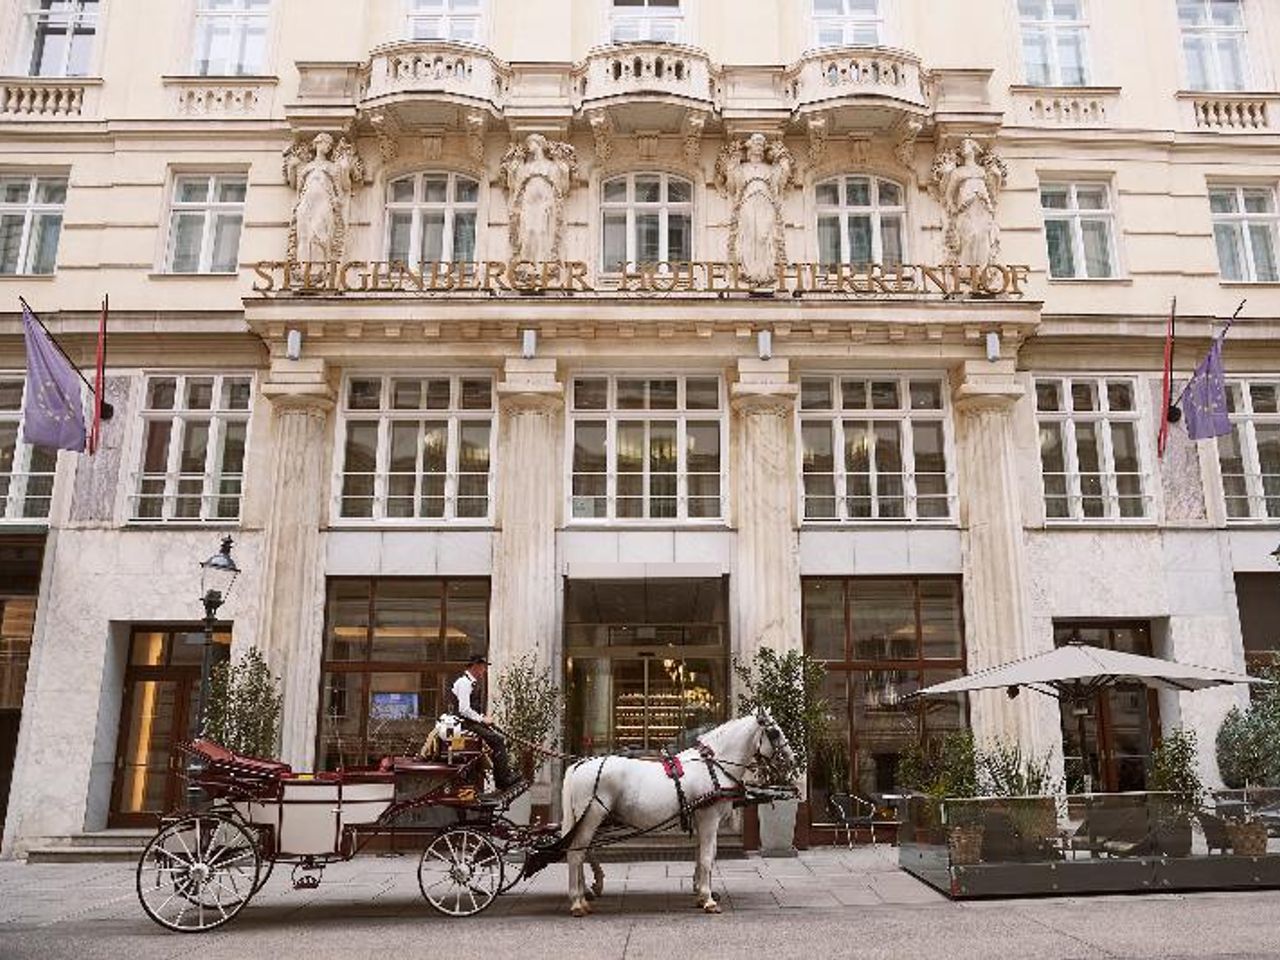 Städtereise Wien im Steigenberger Hotel Herrenhof